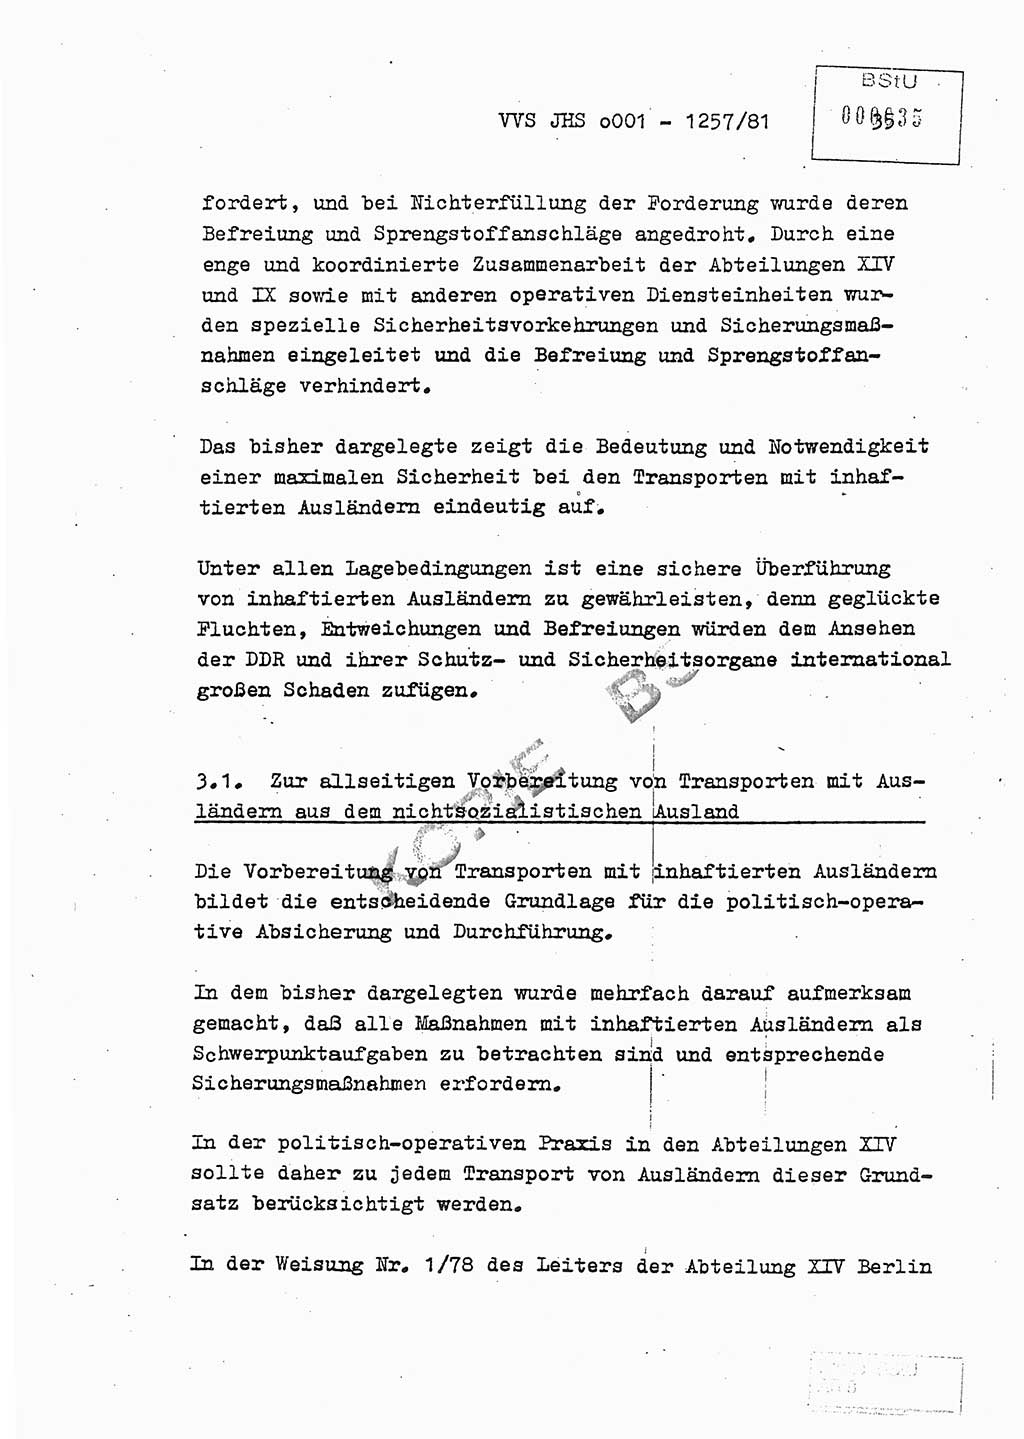 Fachschulabschlußarbeit Unterleutnant Dieter Möller (BV Rst. Abt. ⅩⅣ), Ministerium für Staatssicherheit (MfS) [Deutsche Demokratische Republik (DDR)], Juristische Hochschule (JHS), Vertrauliche Verschlußsache (VVS) o001-1257/81, Potsdam 1982, Seite 35 (FS-Abschl.-Arb. MfS DDR JHS VVS o001-1257/81 1982, S. 35)